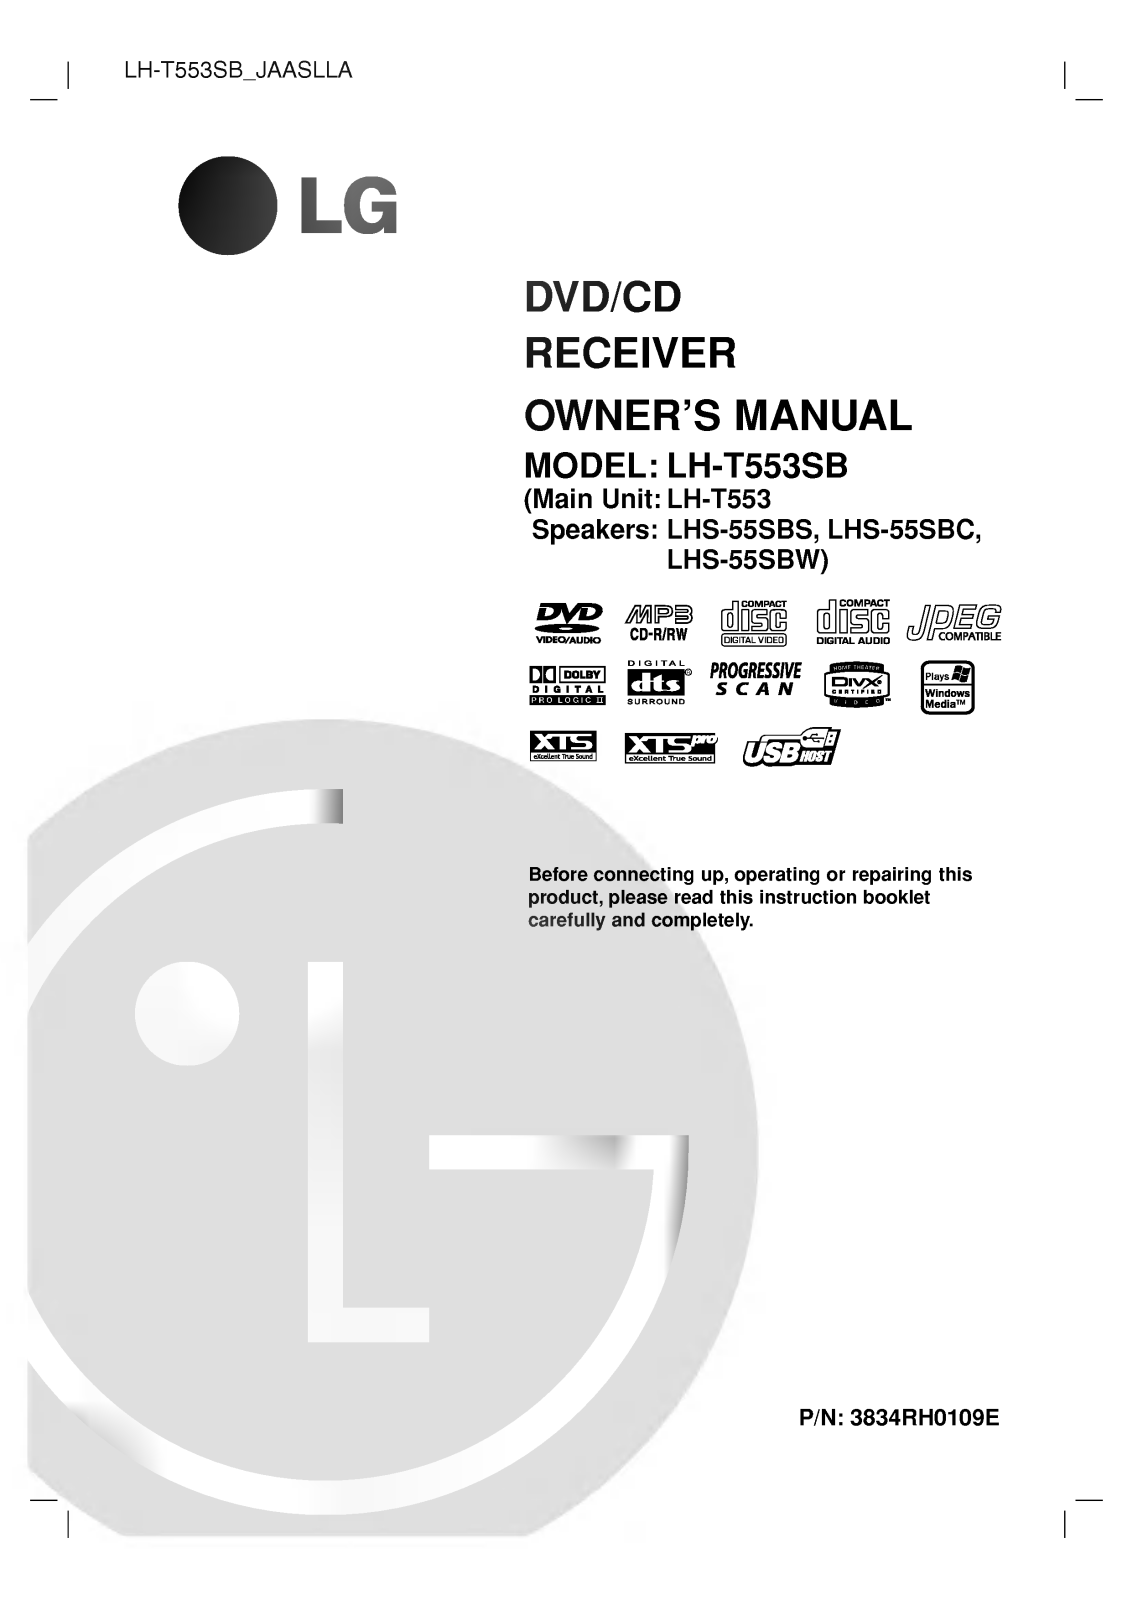 LG LH-T552TB user manuals